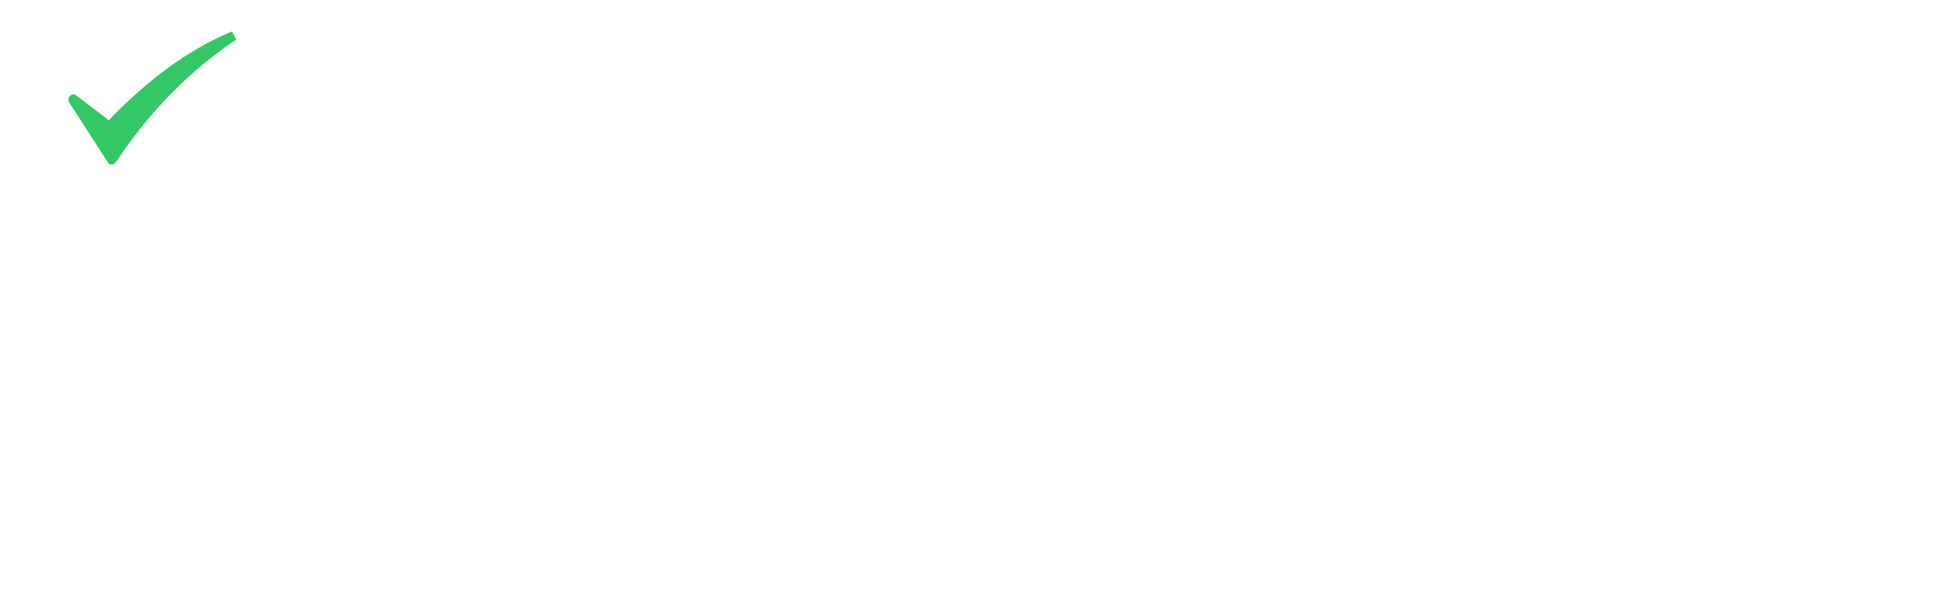 Compliance Risk Analyzer Logo